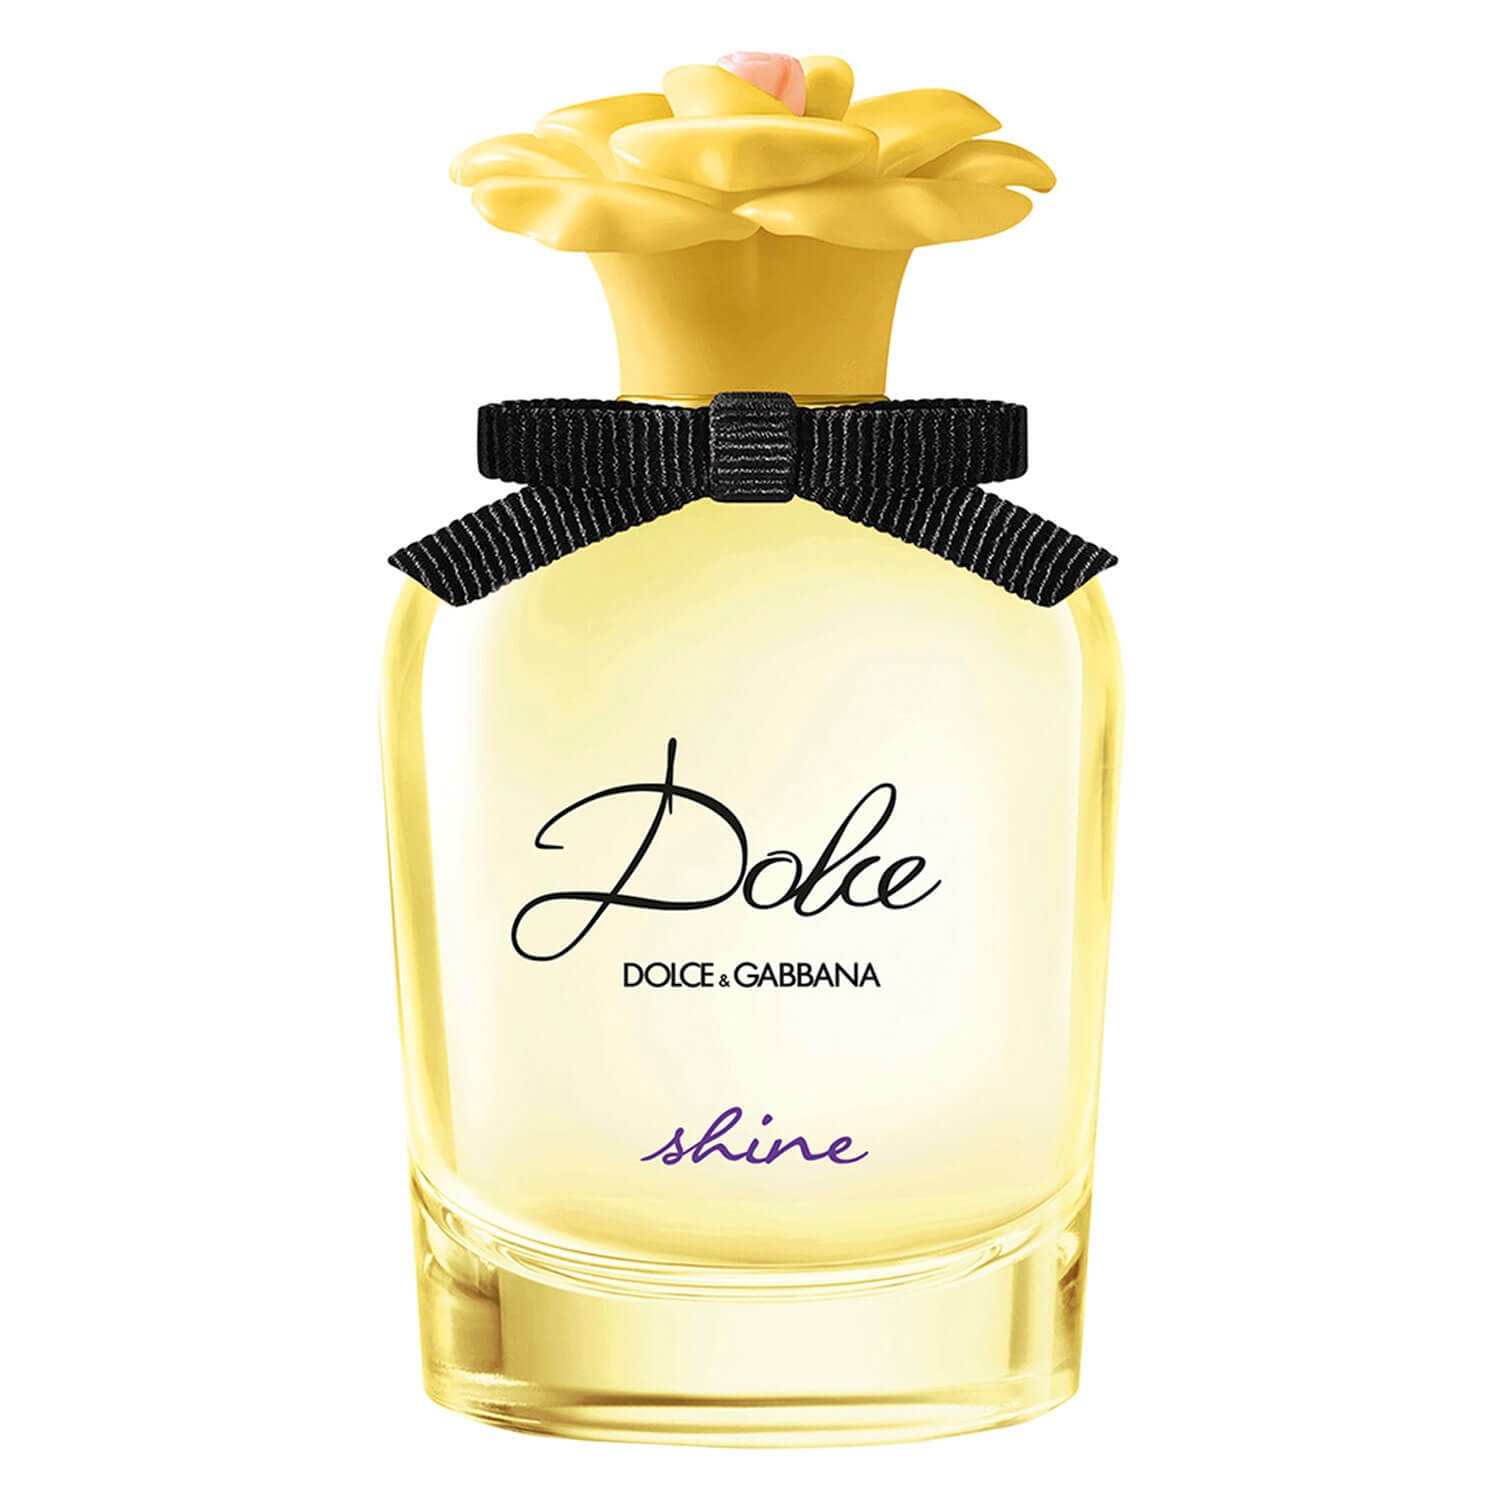 Produktbild von D&G Dolce - Shine Eau de Parfum